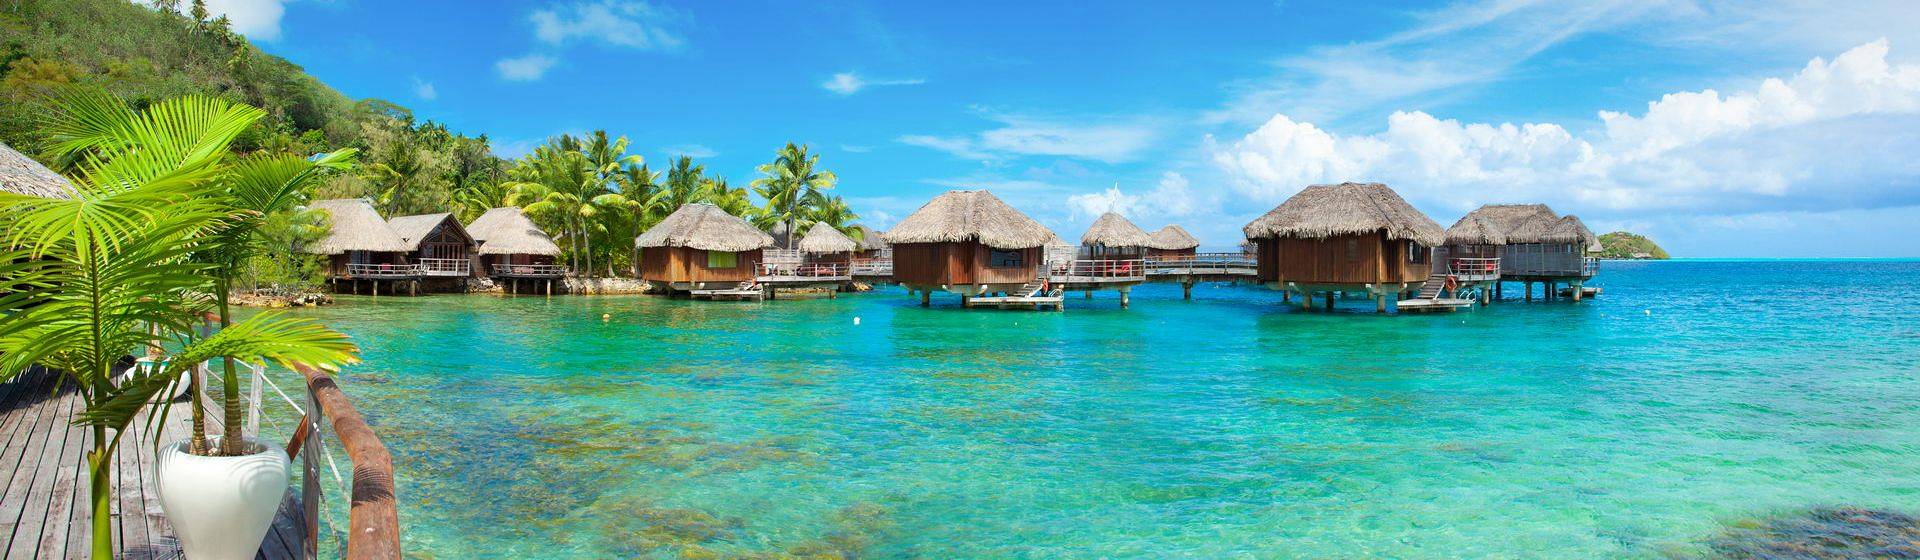 Holidays to Tahiti Image